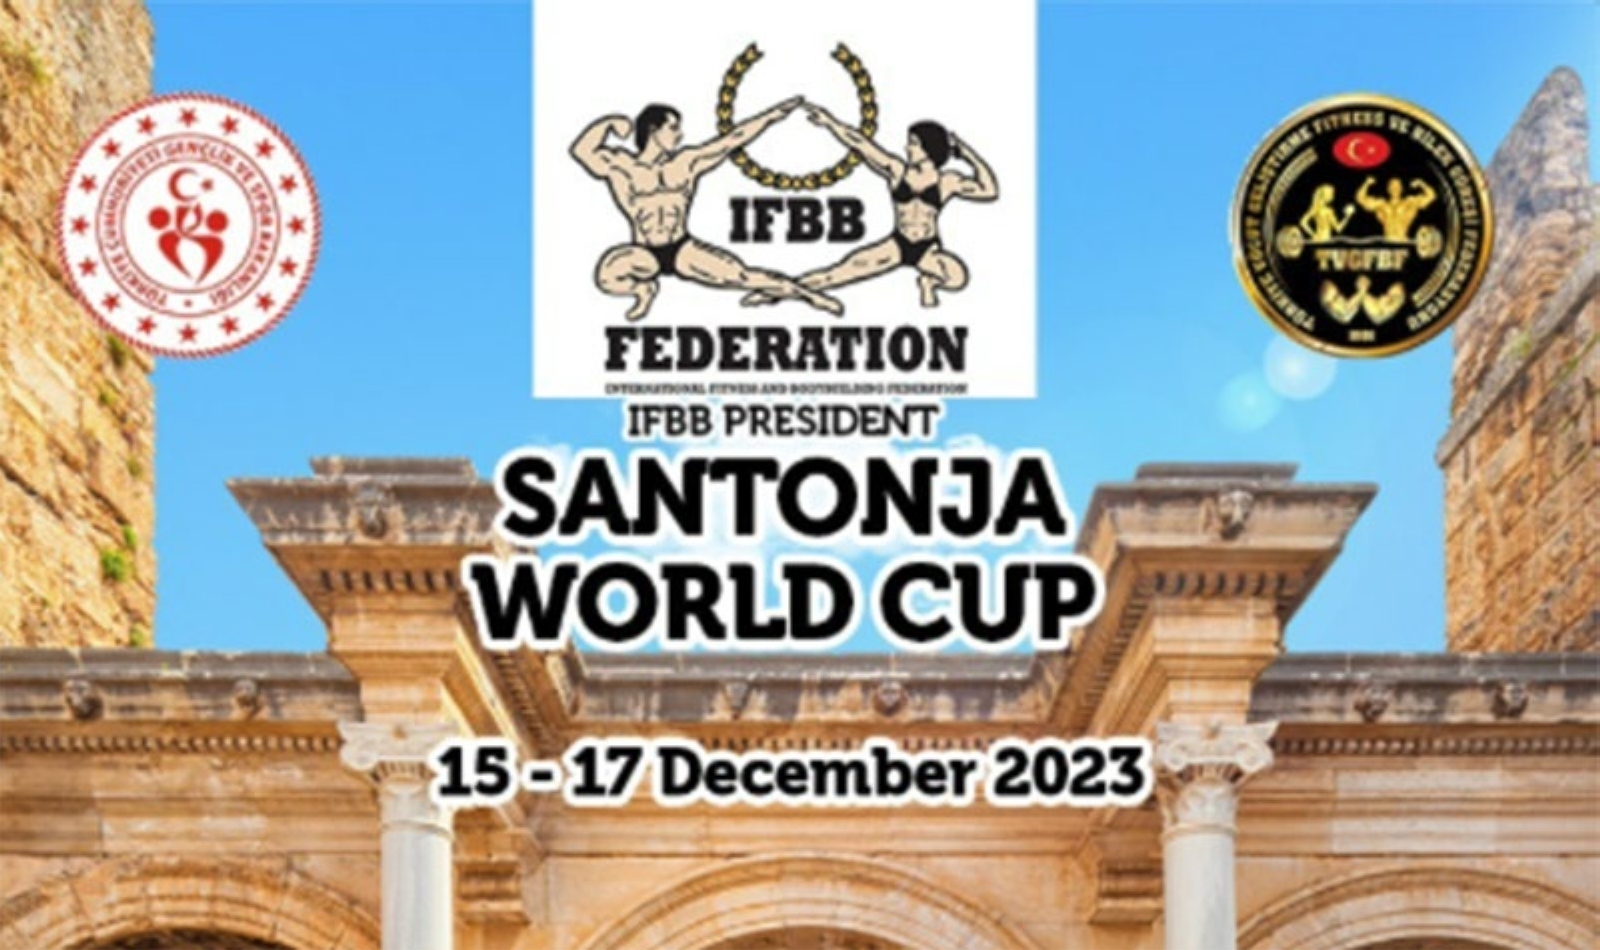 Inscripción al IFBB President Santonja World Cup 2023